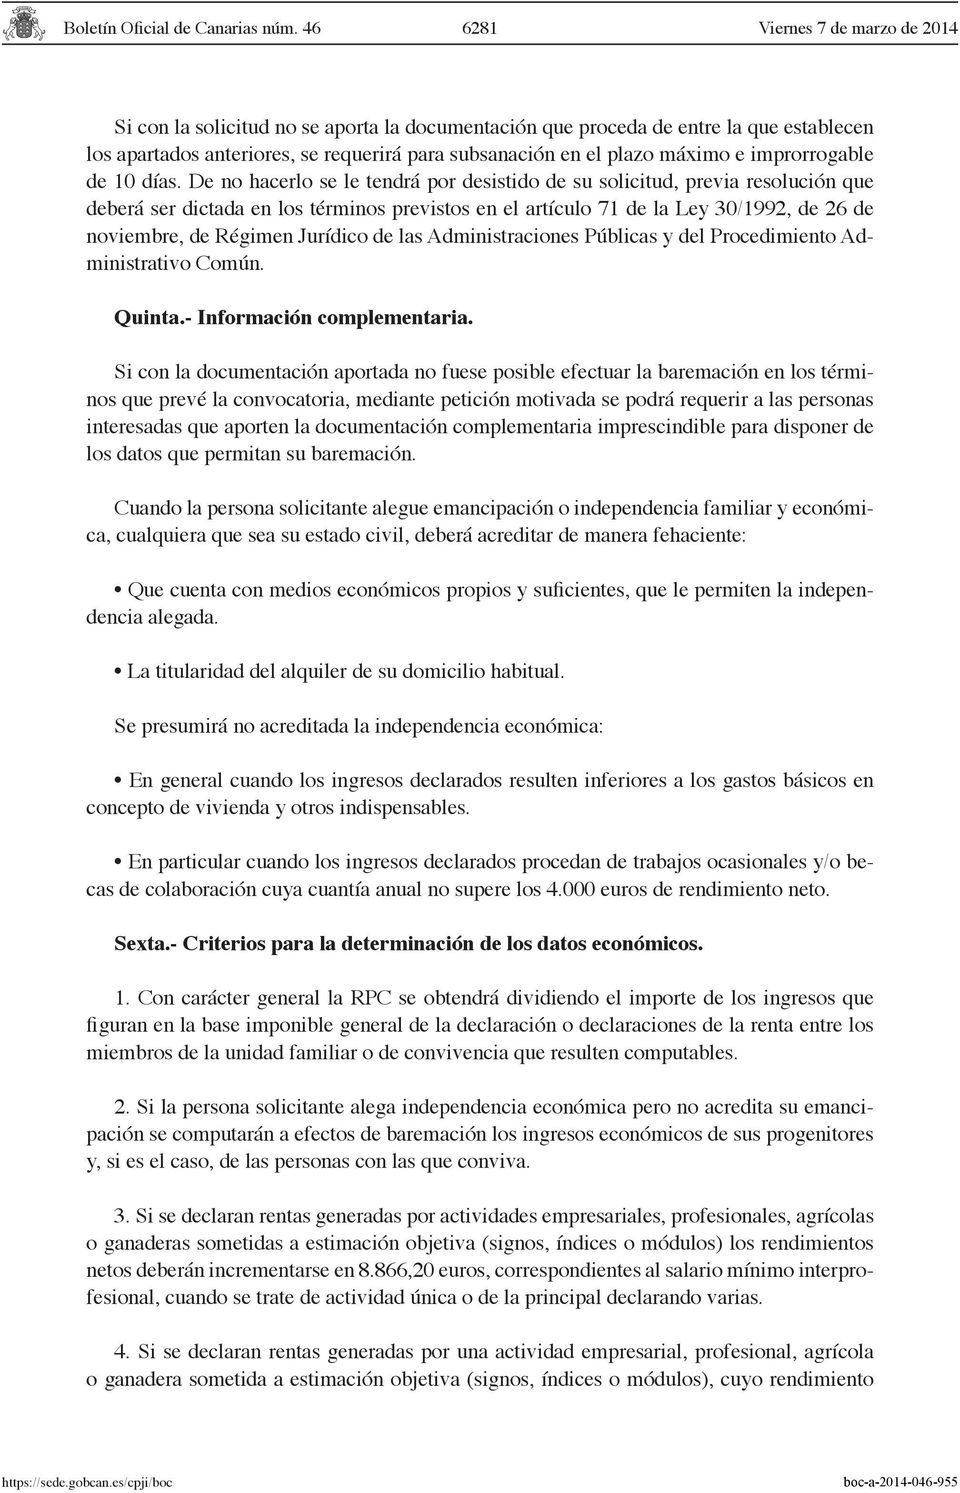 Jurídico de las Administraciones Públicas y del Procedimiento Administrativo Común. Quinta.- Información complementaria.